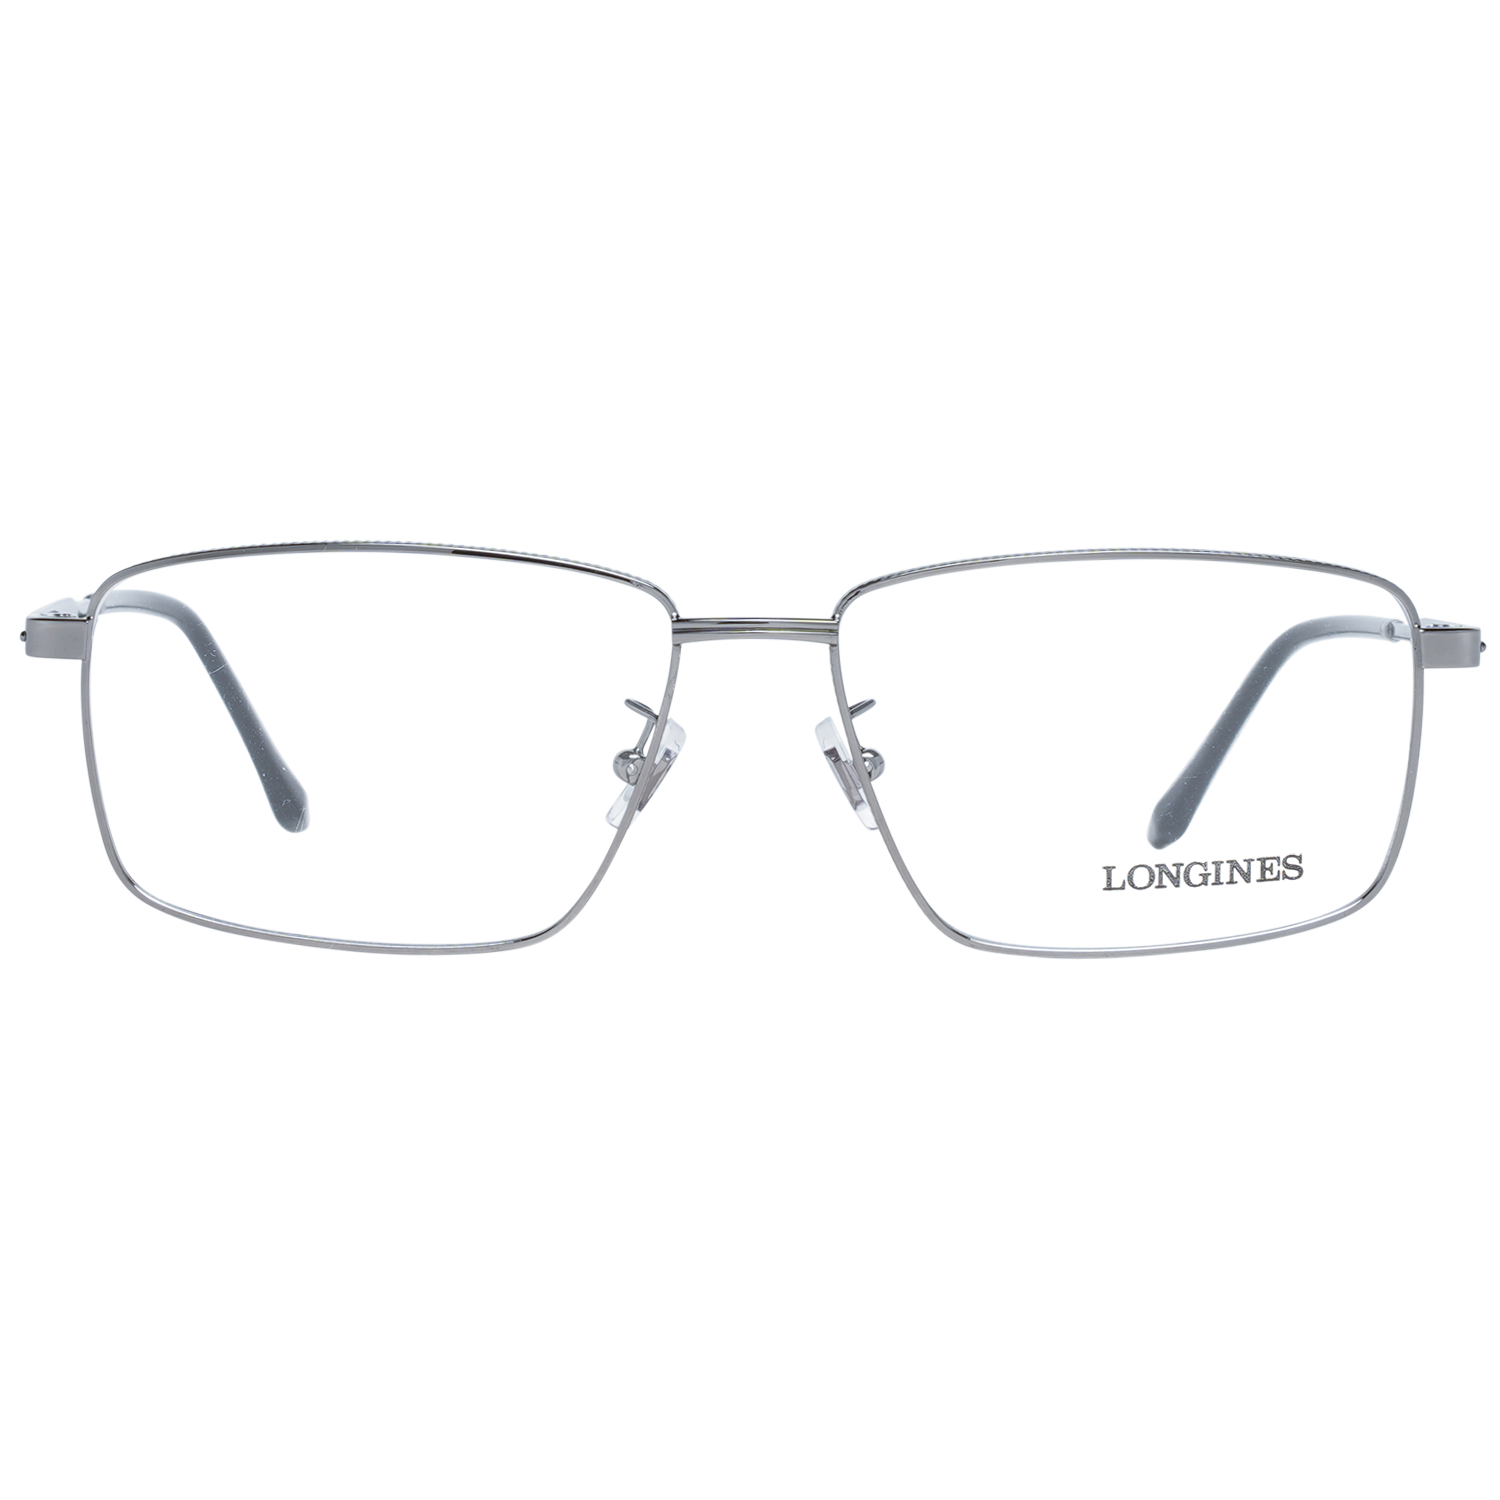 Longines Frames Longines Optical Frame LG5017-H 008 57 Eyeglasses Eyewear UK USA Australia 